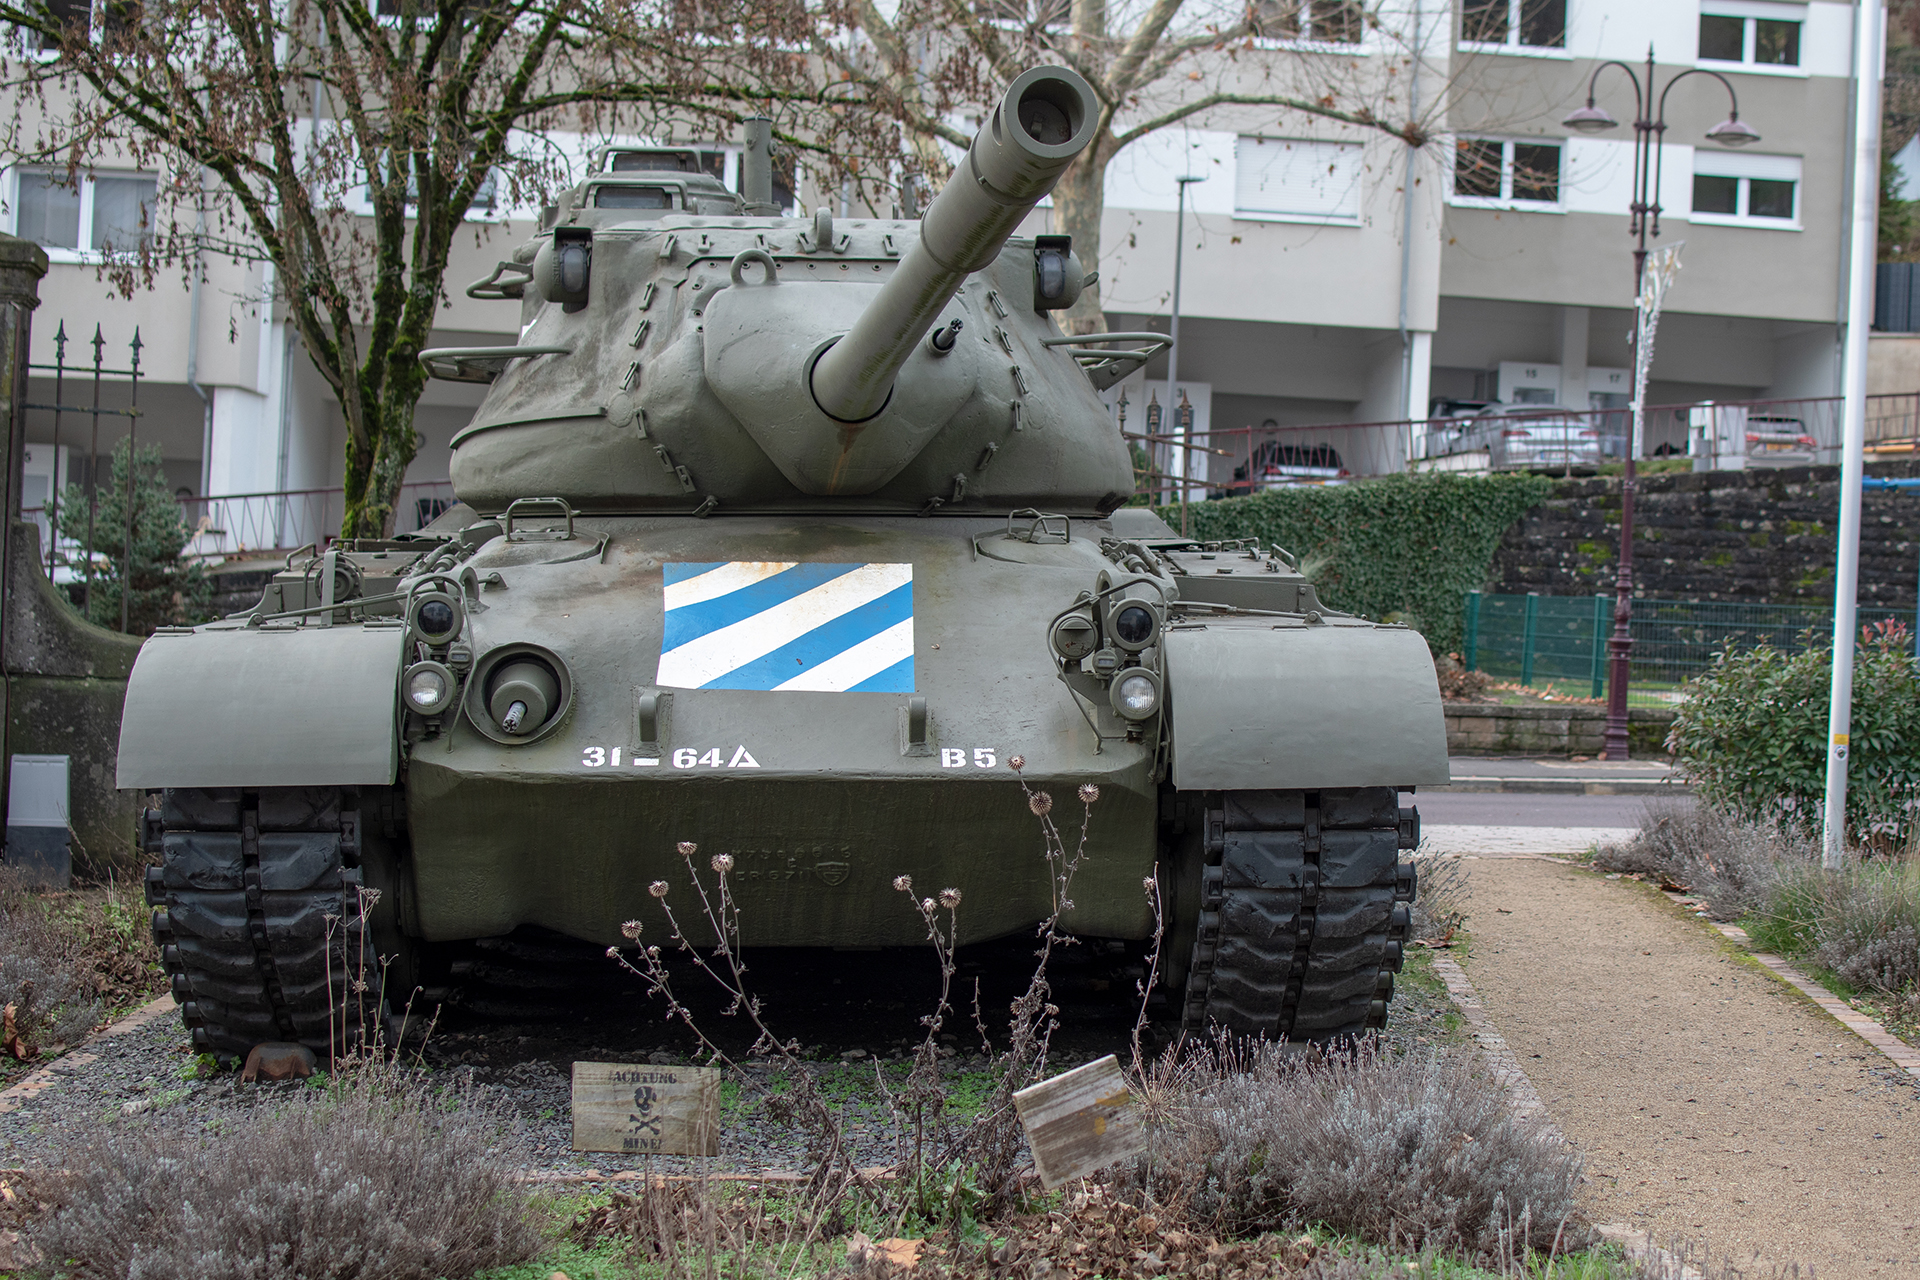  DTA M47 Patton front- Musée National d'Histoire Militaire, Diekirch